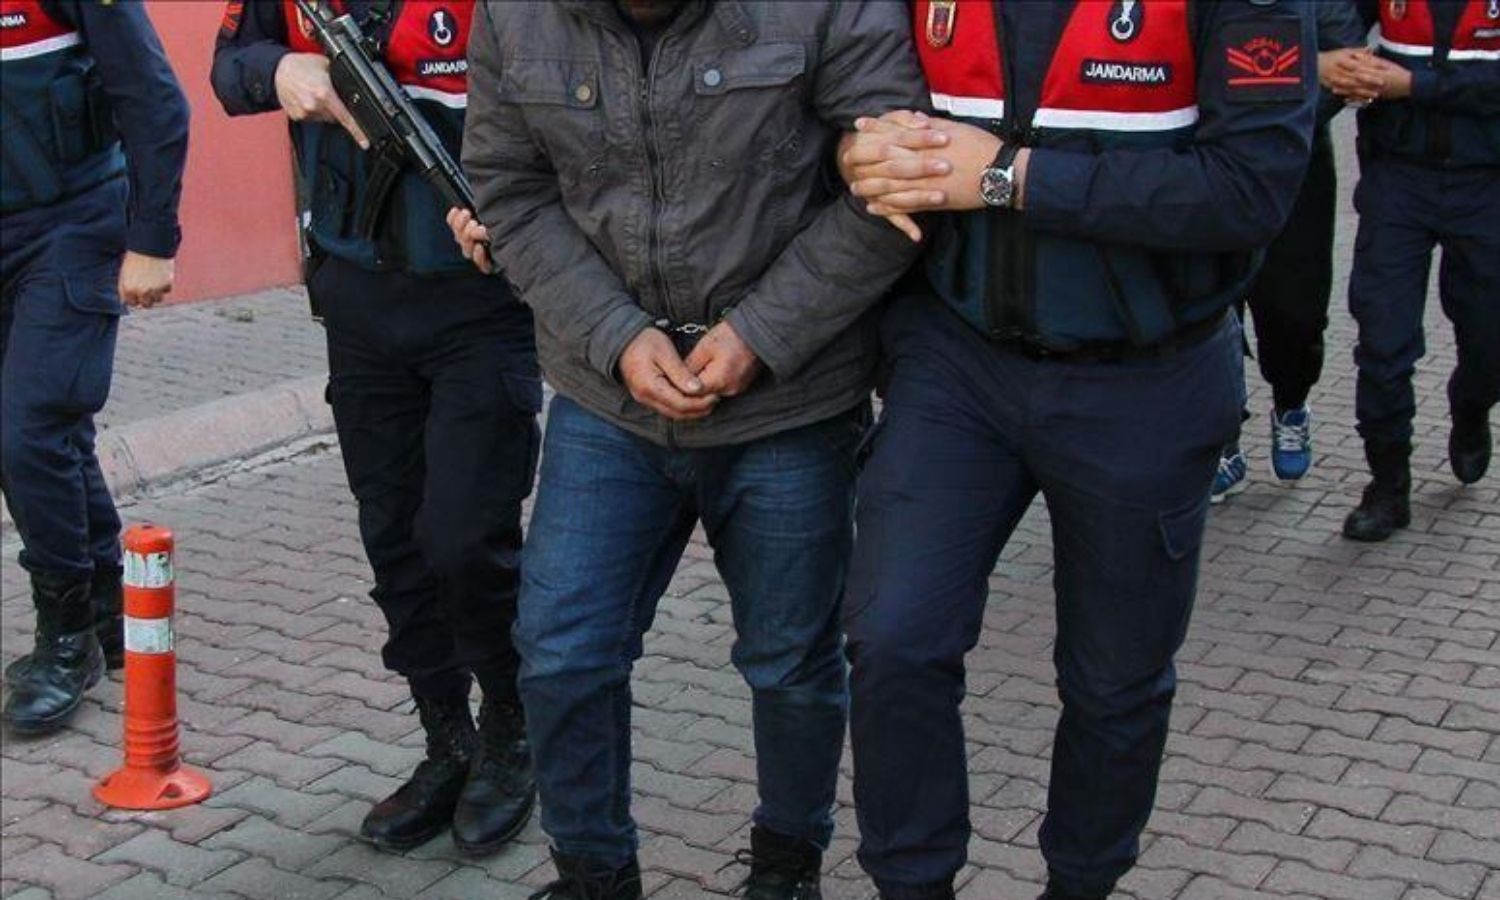 السلطات التركية تعتقل شخصين من عفرين في مدينة إسطنبول بتهمة التعامل مع الإدارة